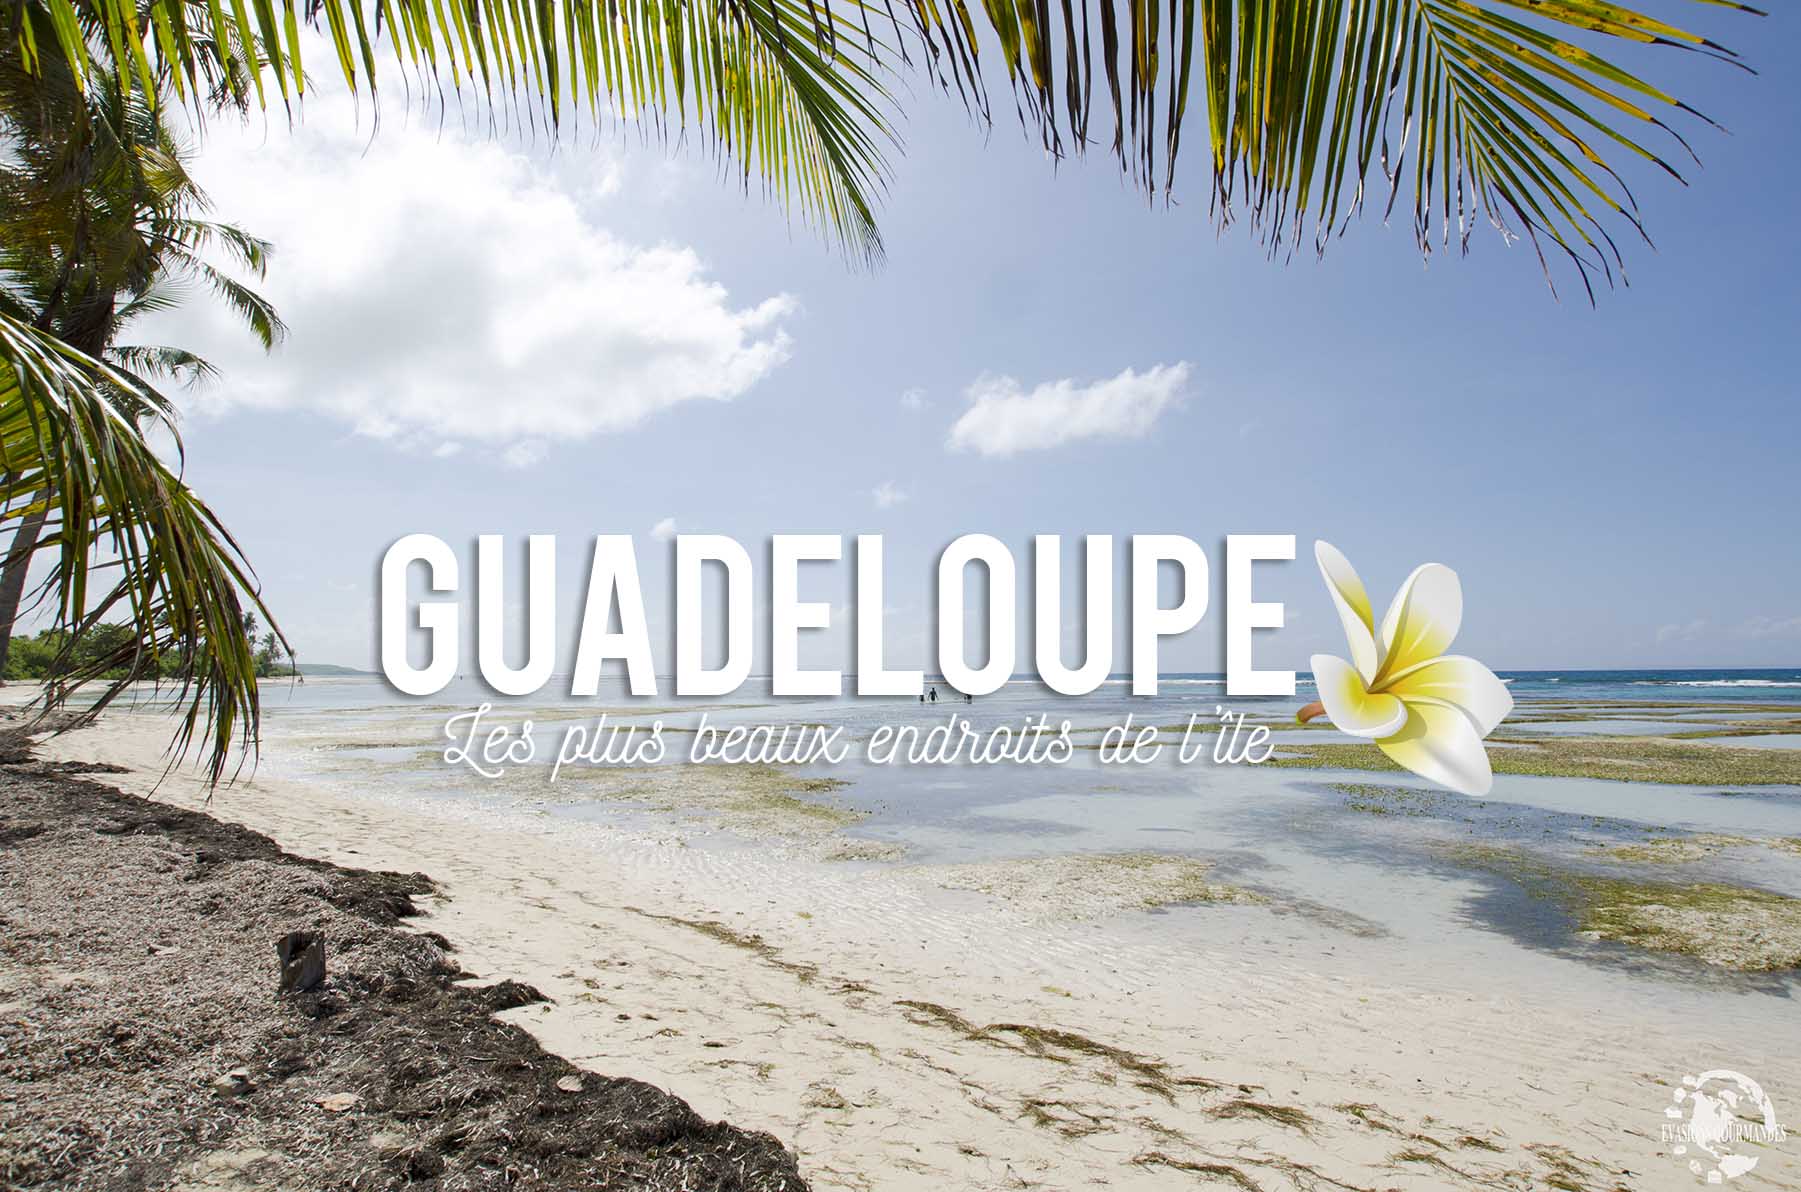 Les plus beaux endroits de Guadeloupe